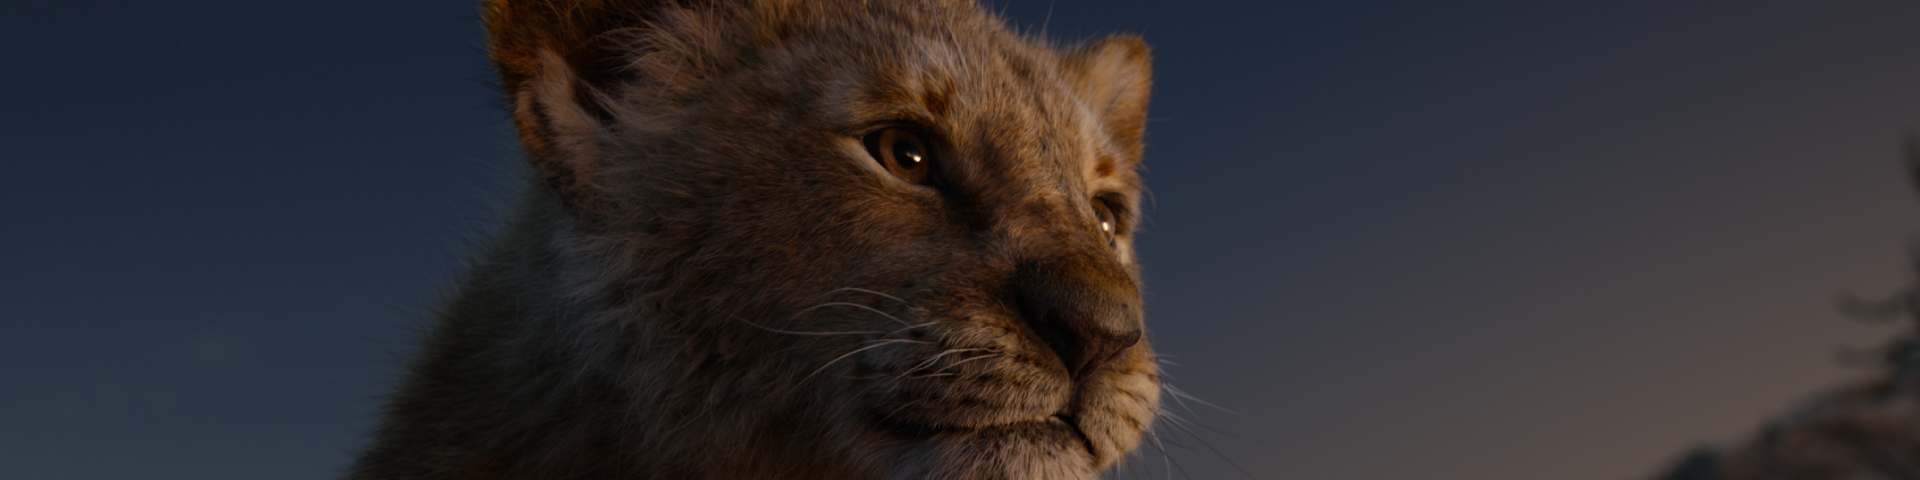 Στιγμιότυπο από την ταινία Lion King που απεικονίζει μικρό λιοντάρι